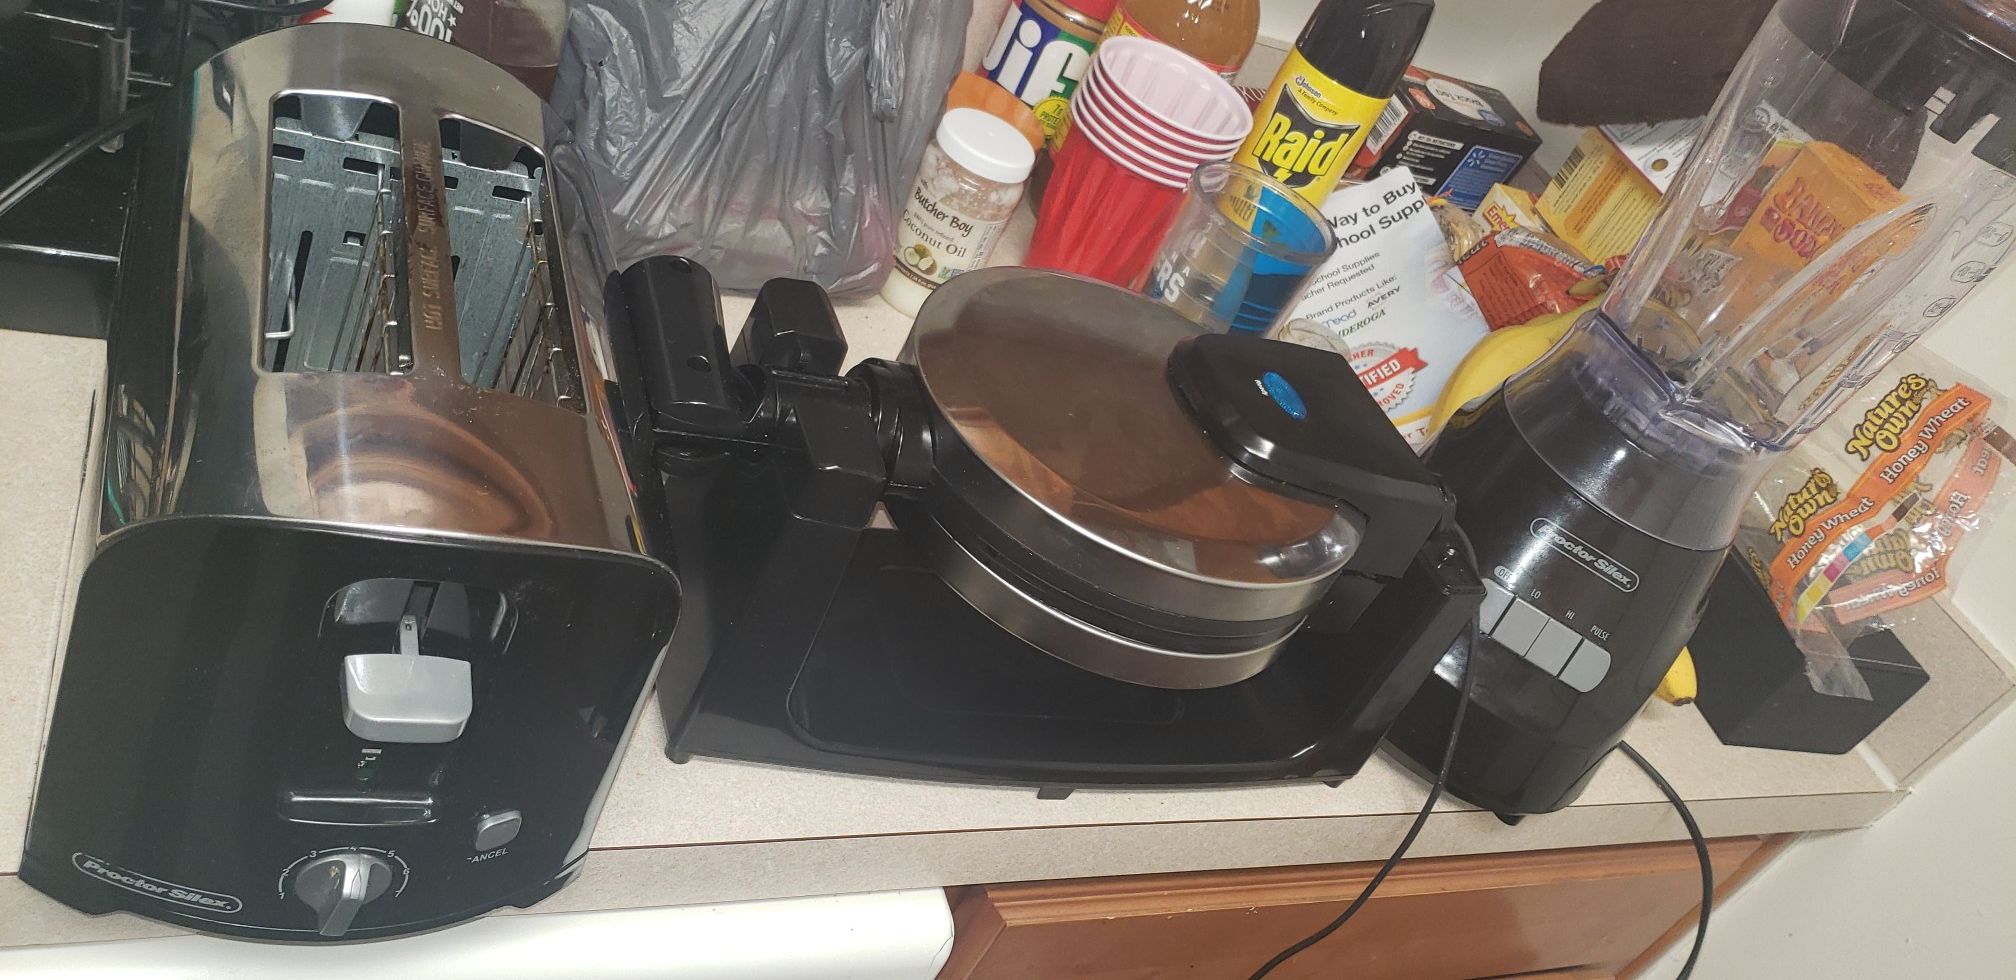 Toaster waffle iron blender